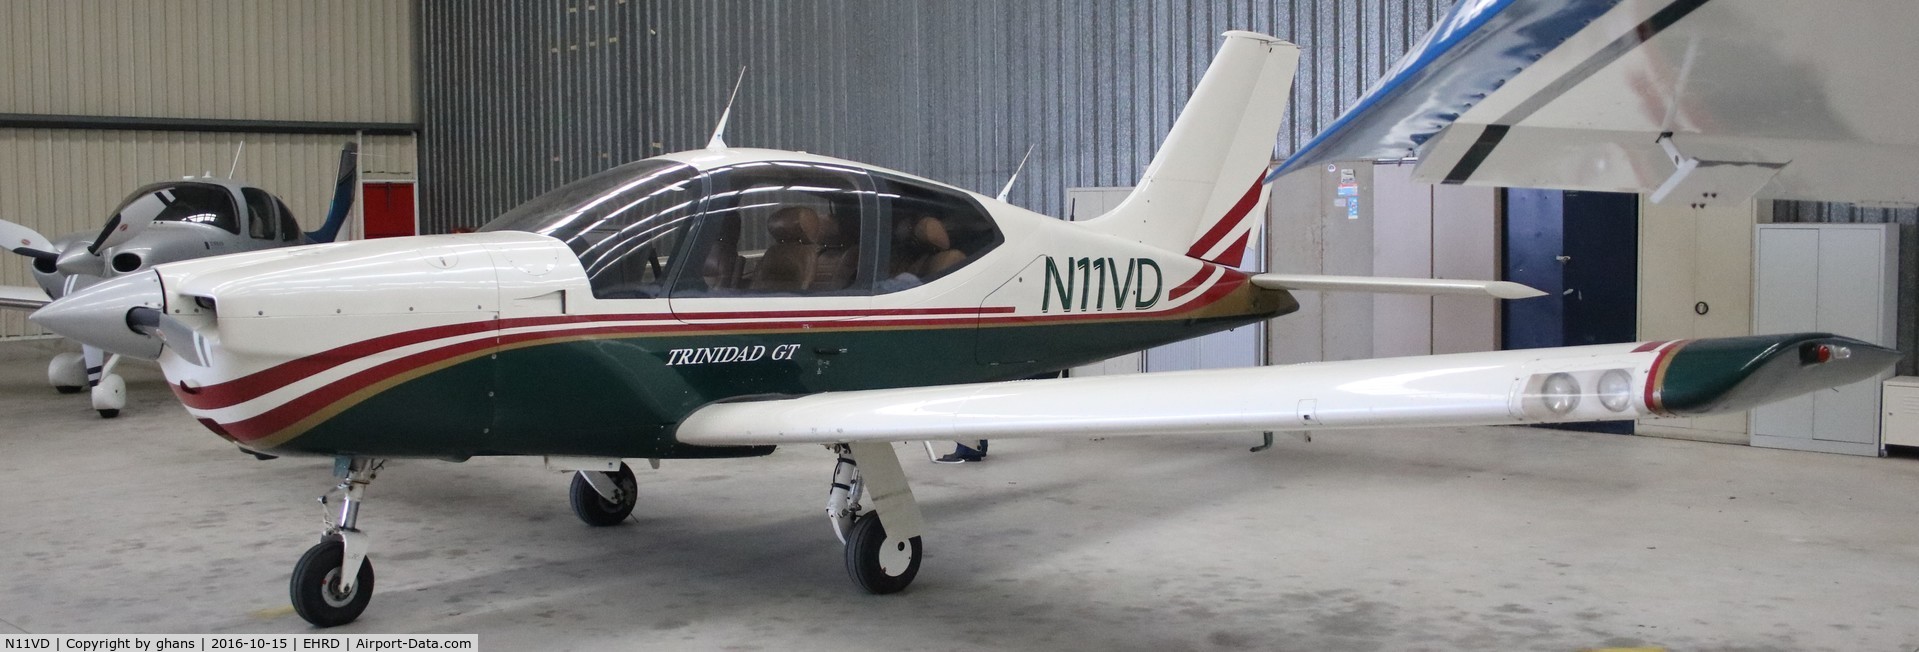 N11VD, 2001 Socata TB-20 GT C/N 2052, Parked in hangar @ EHRD